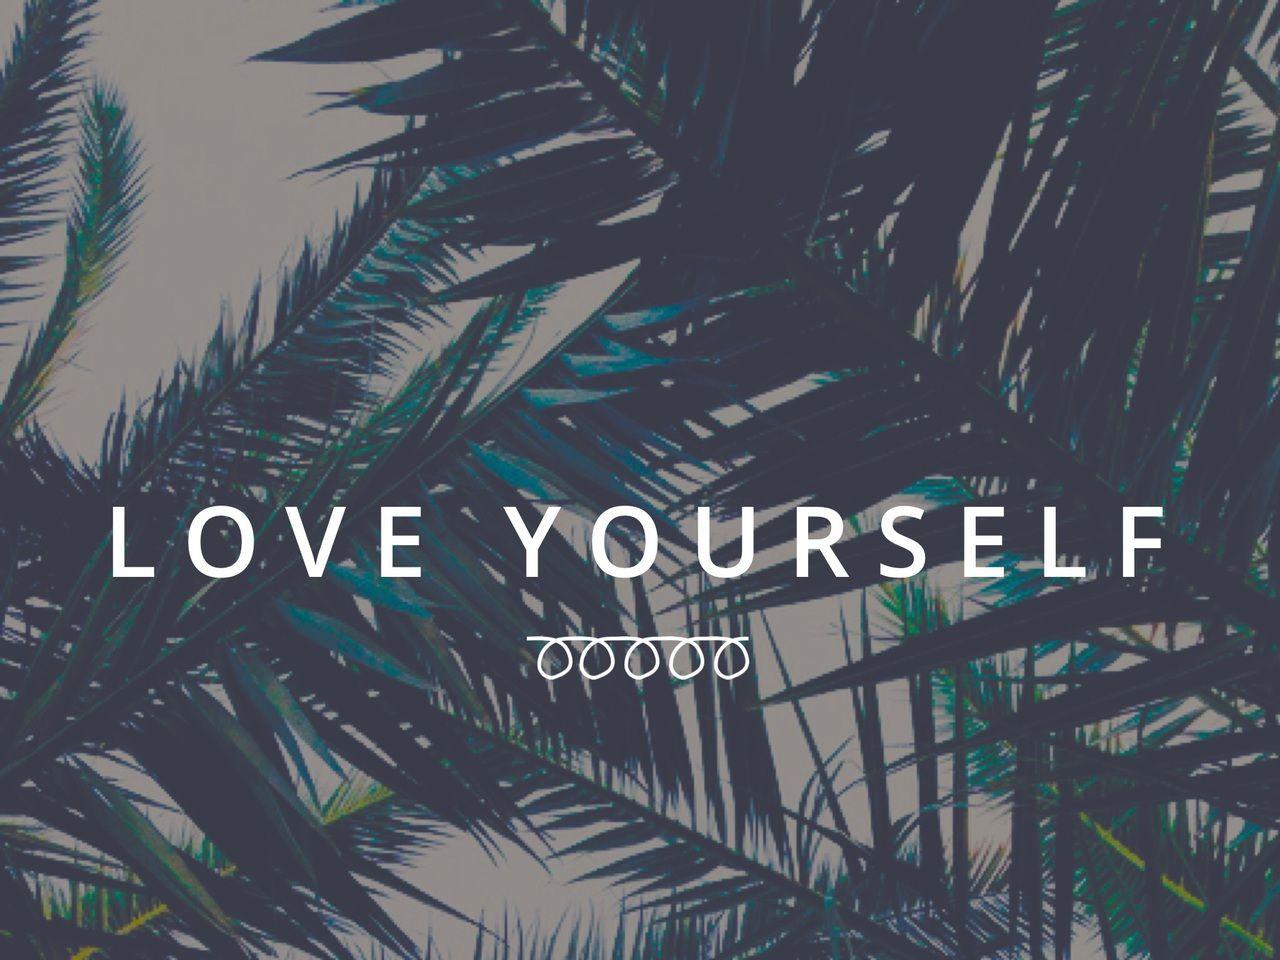 Love yourself shared by Ioana Raţ